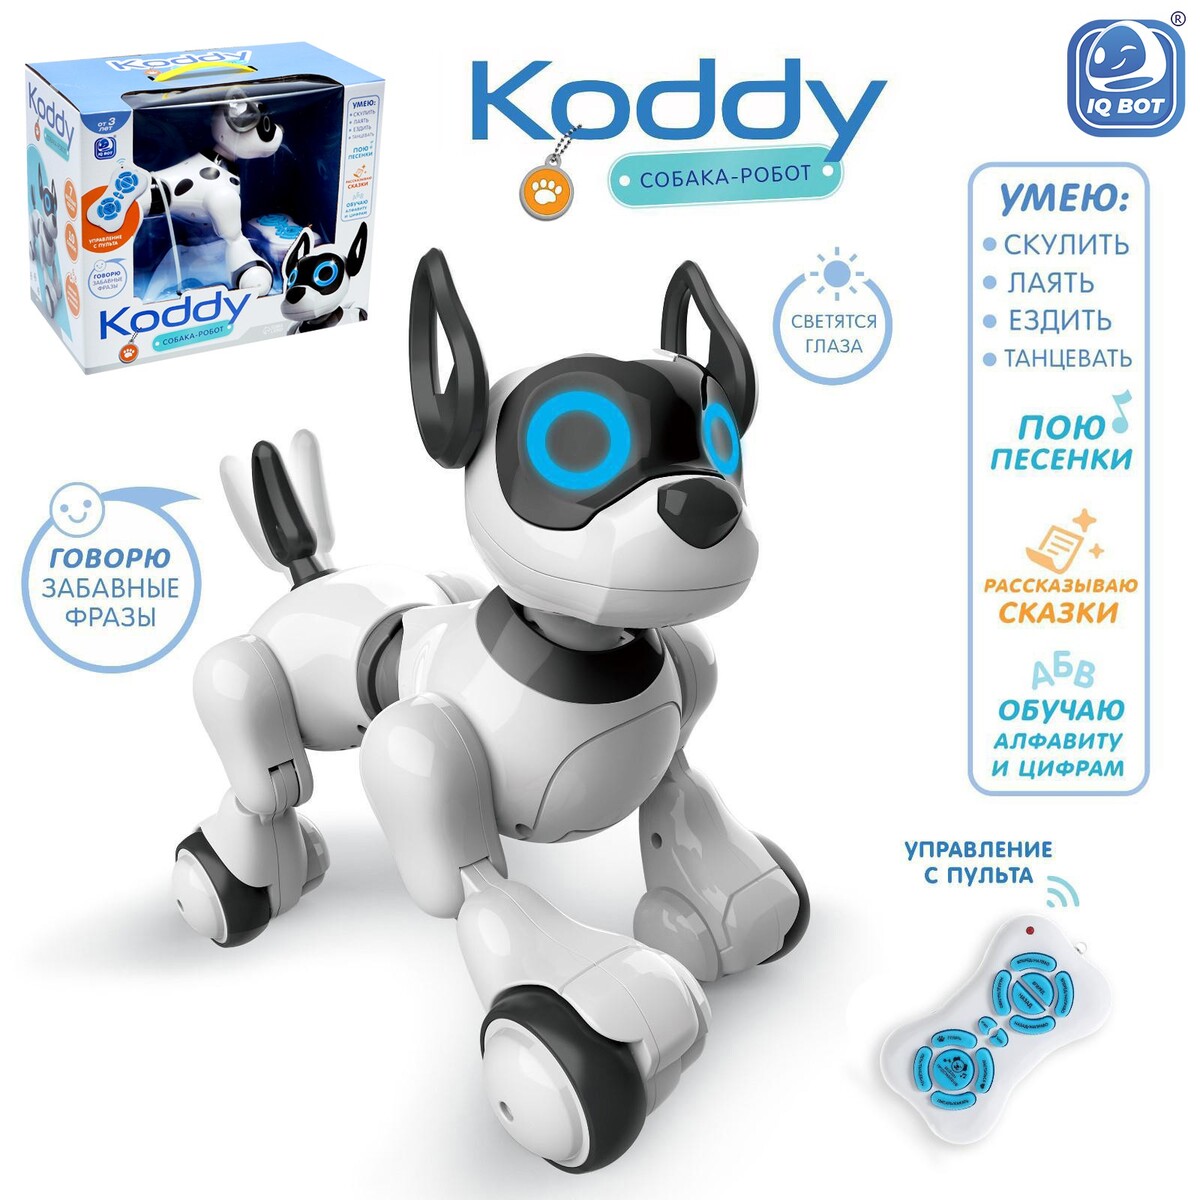 Робот собака koddy iq bot, на пульте управления, интерактивный: звук, свет, танцующий, музыкальный, на аккумуляторе feng yuan робот трансформер грузовик на пульте управления